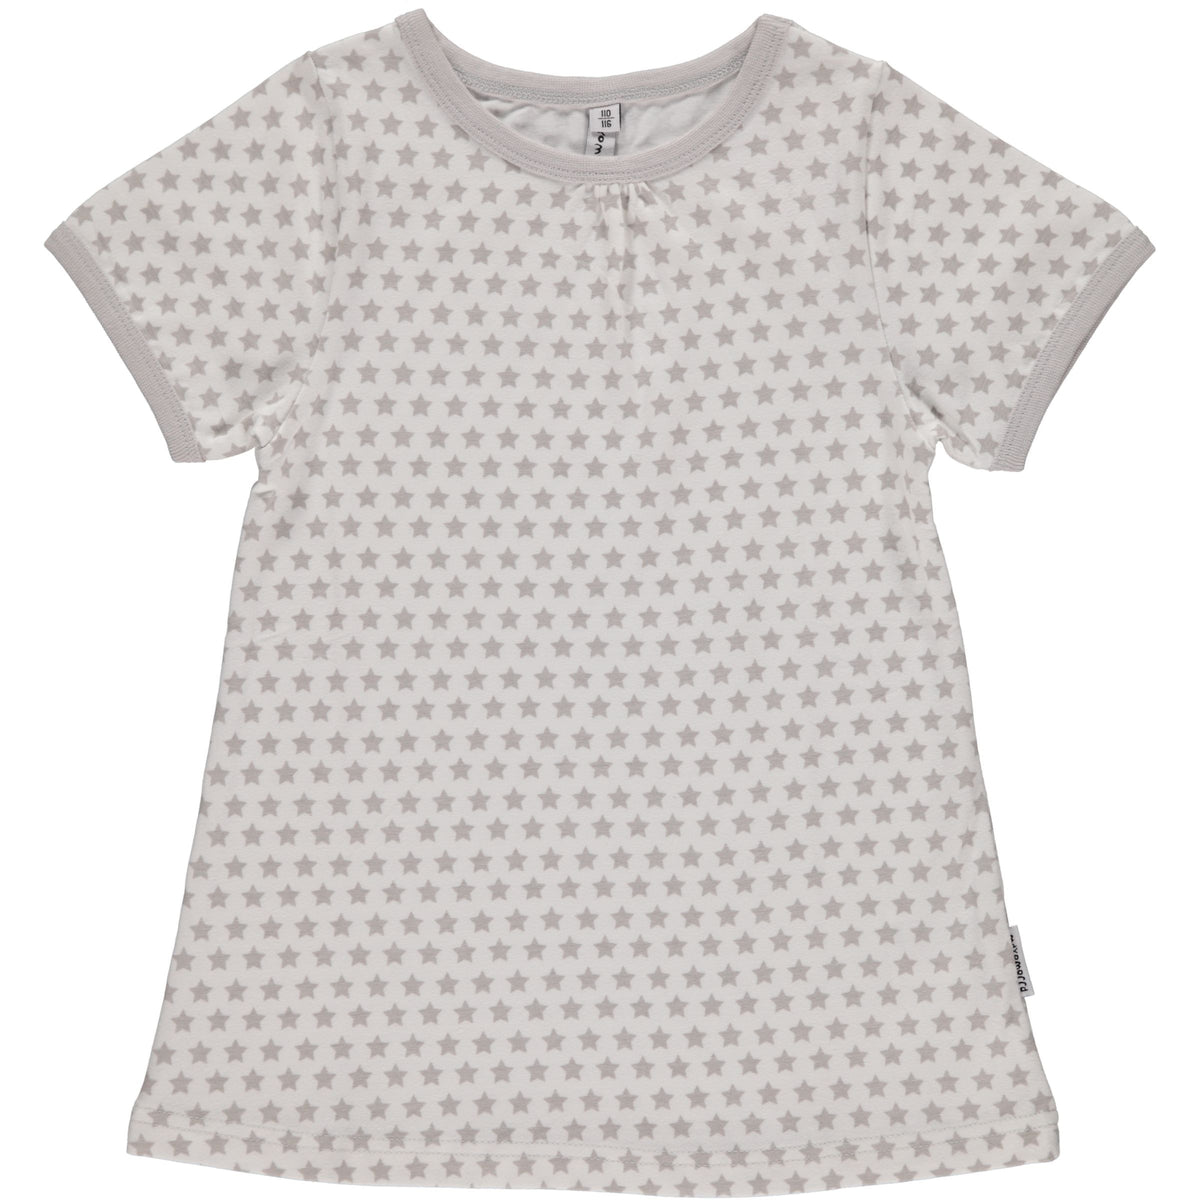 Mädchen T-Shirt Top A-Line SS Stars Grey